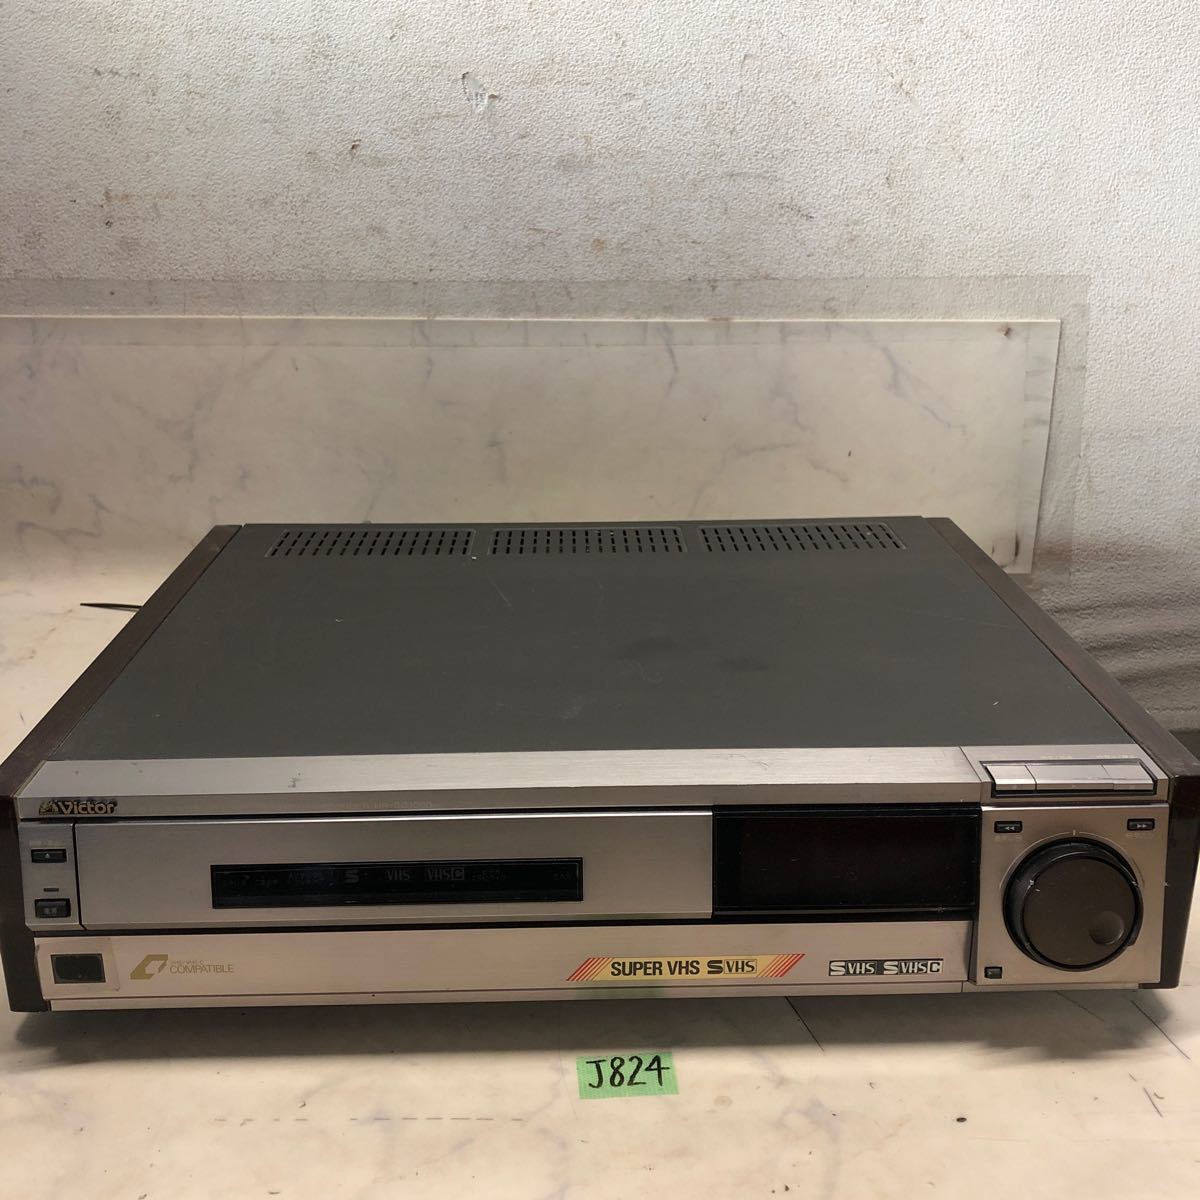 (J824) ジャンク Victor HR-SC1000 S-VHS ビデオカセットレコーダー ビデオデッキ コンパチブル _画像1